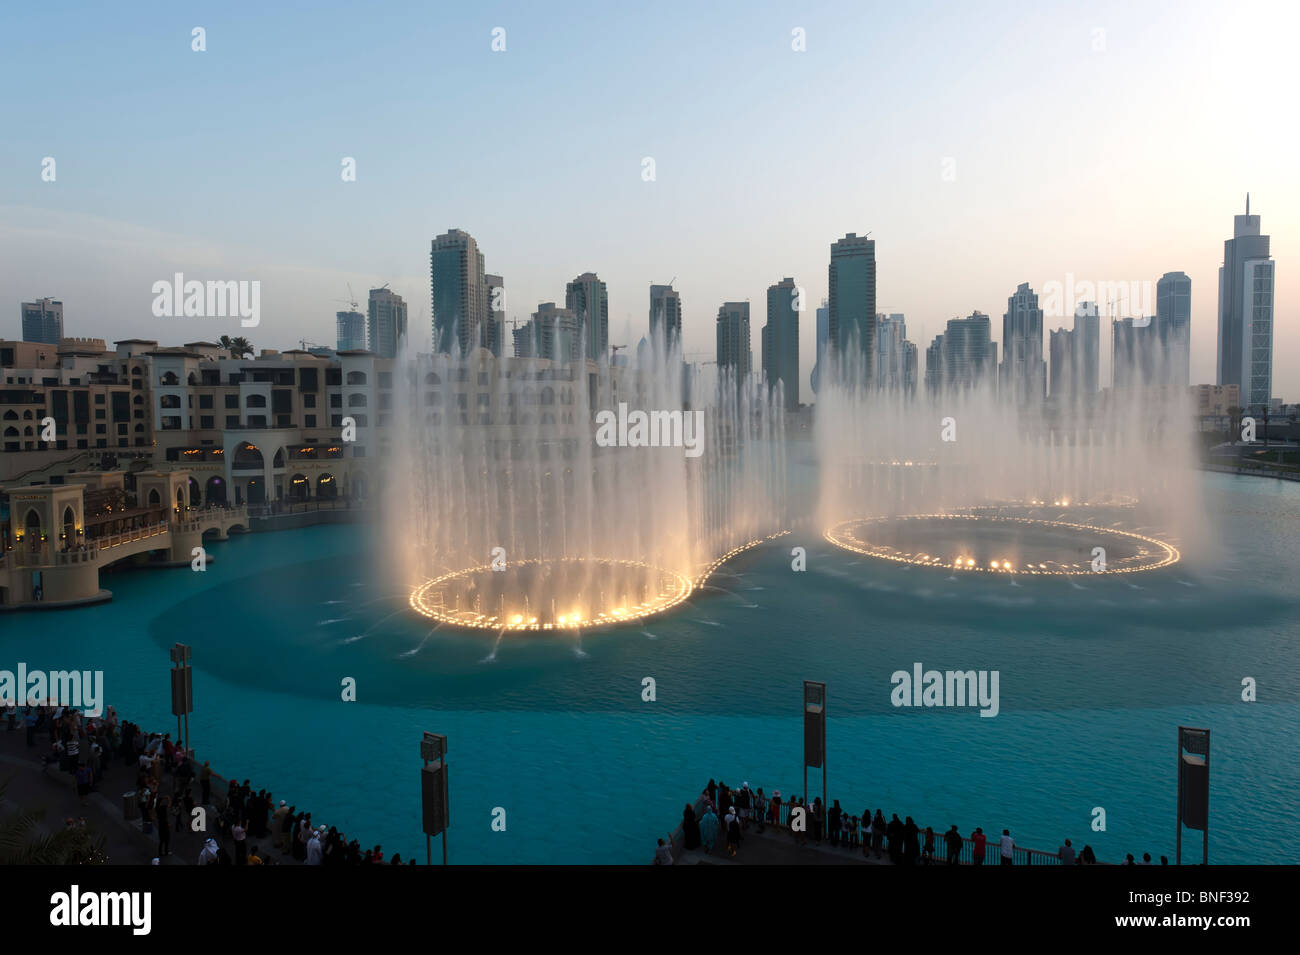 Evening image of the illuminated Dubai Fountains at Downtown Dubai Mall, Dubai, UAE Stock Photo